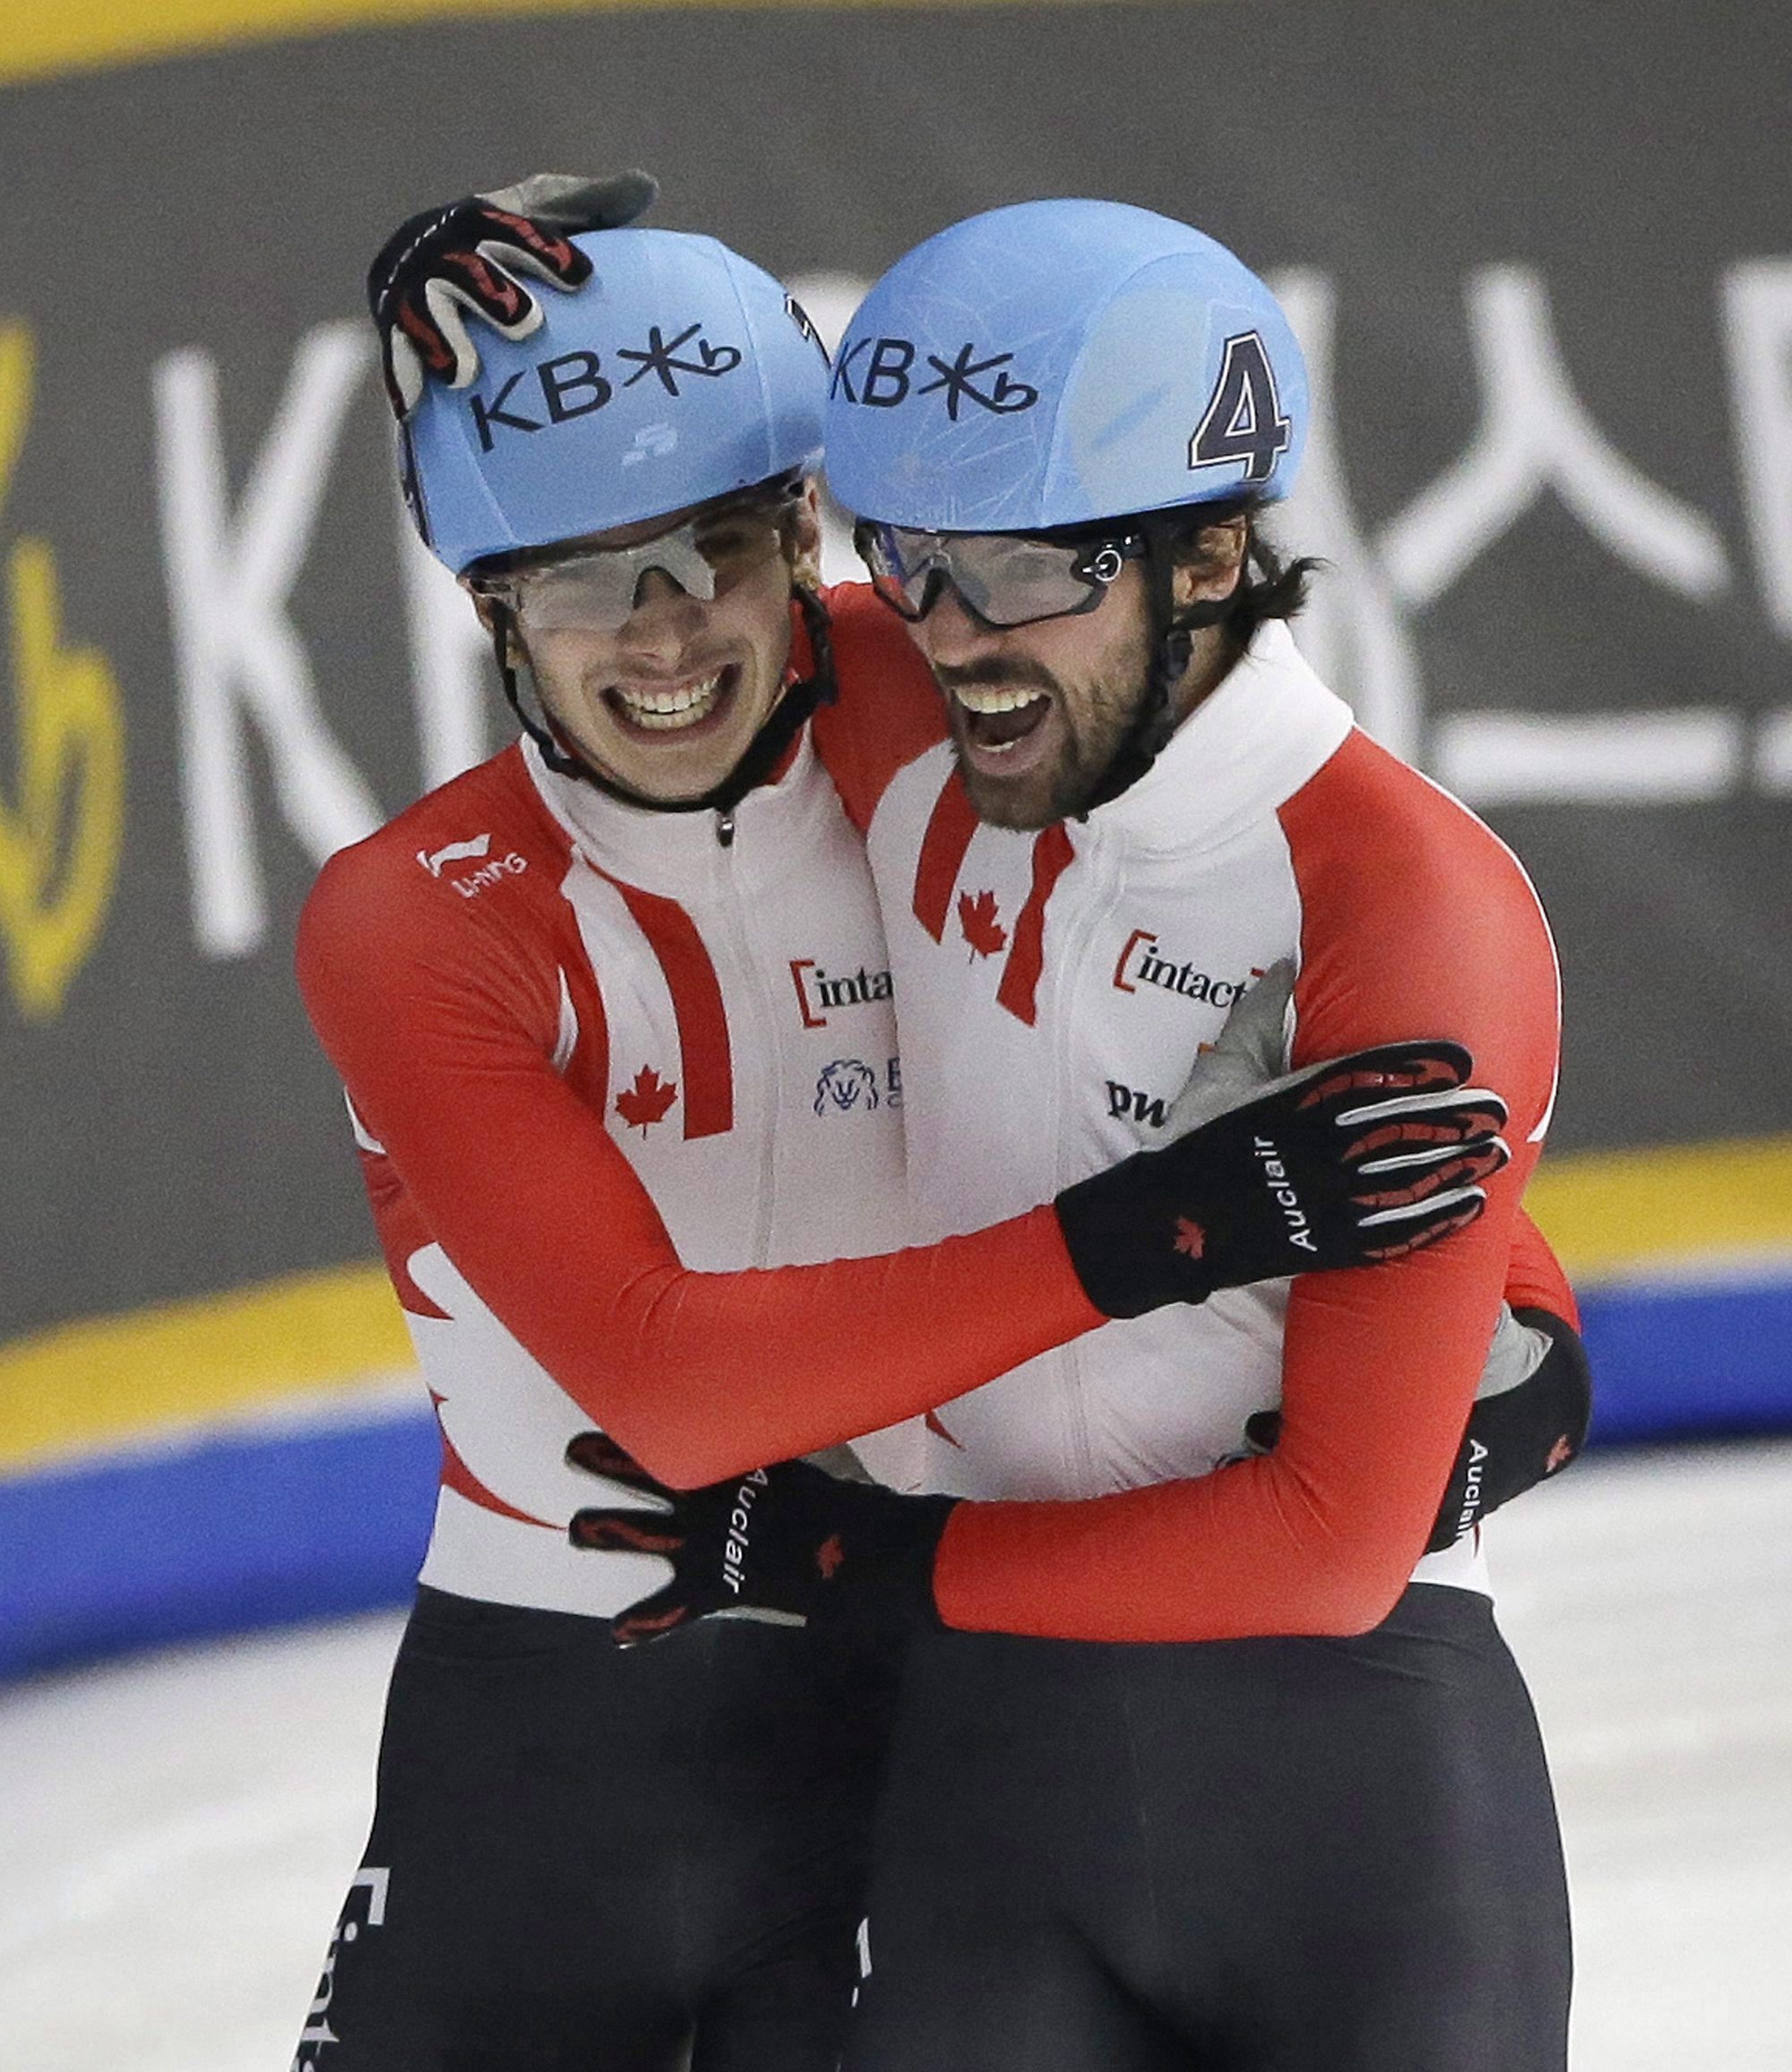 Charles Hamelin (droite) et Samuel Girard célèbrent après avoir remporté l'or et l'argent respectivement à l'épreuve 1000 m des Mondiaux de courte piste disputés à Séoul, en Corée du Sud, le 13 mars 2016. (AP Photo/Ahn Young-joon)